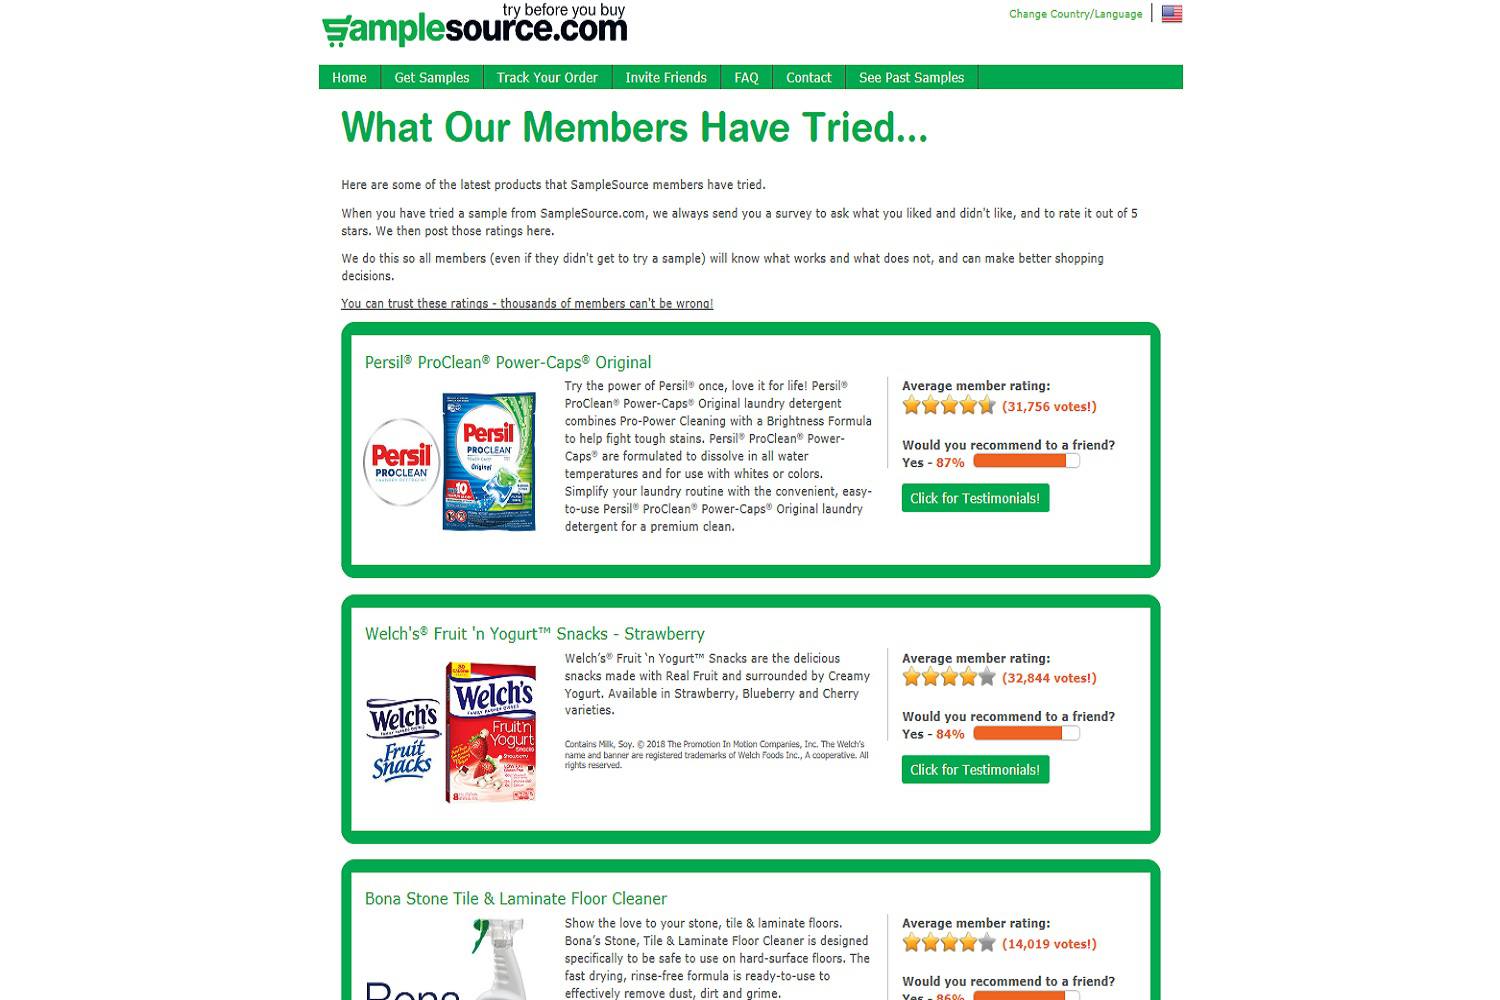 Een screenshot van de SampleSource.com-website met gratis monsters uit het verleden, inclusief gratis monsters van voedselproducten.